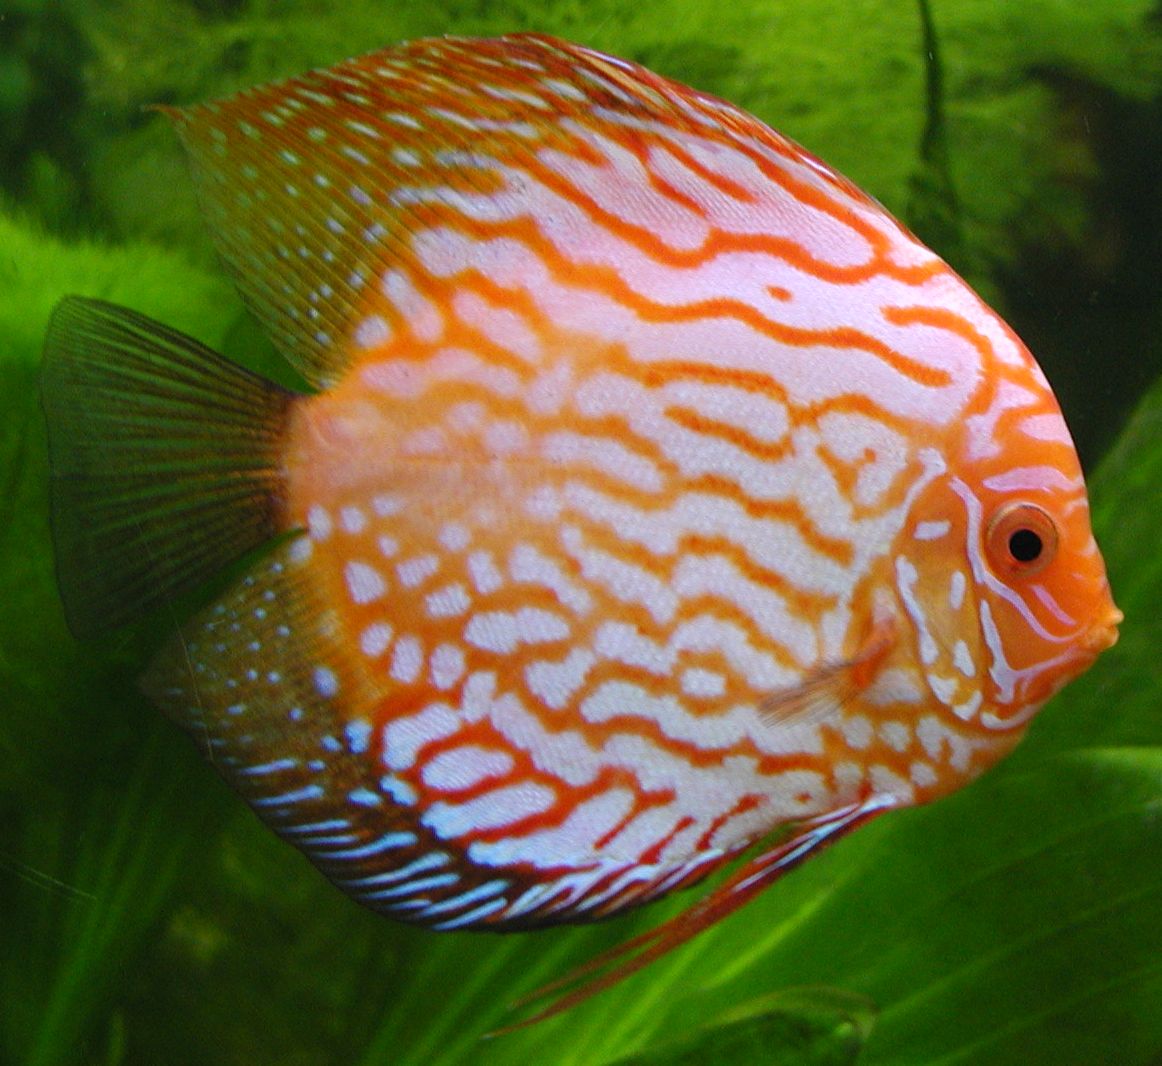 http://aquatropicalfish.files.wordpress.com/2009/02/aqua-tropical-fish-discus.jpg